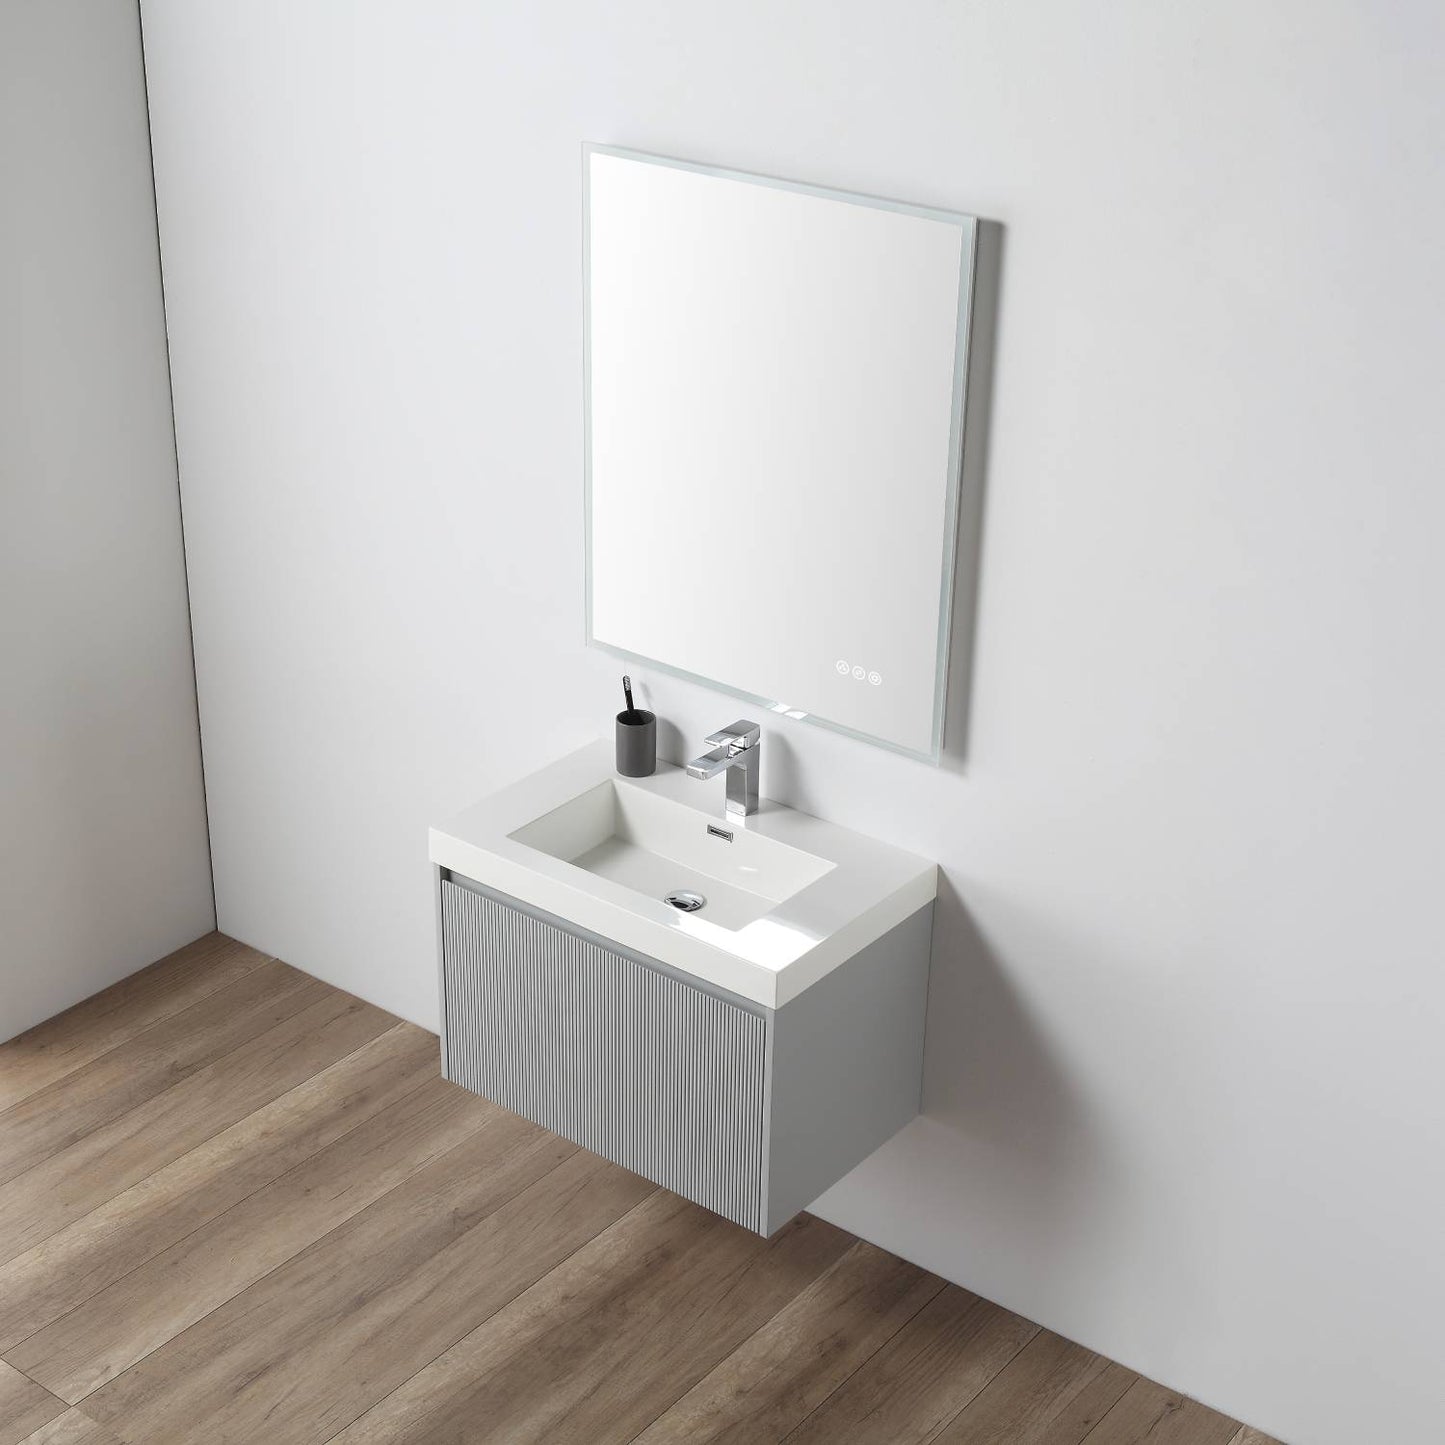 Positano 30" Floating Bathroom Vanity with Acrylic Sink - Light Grey